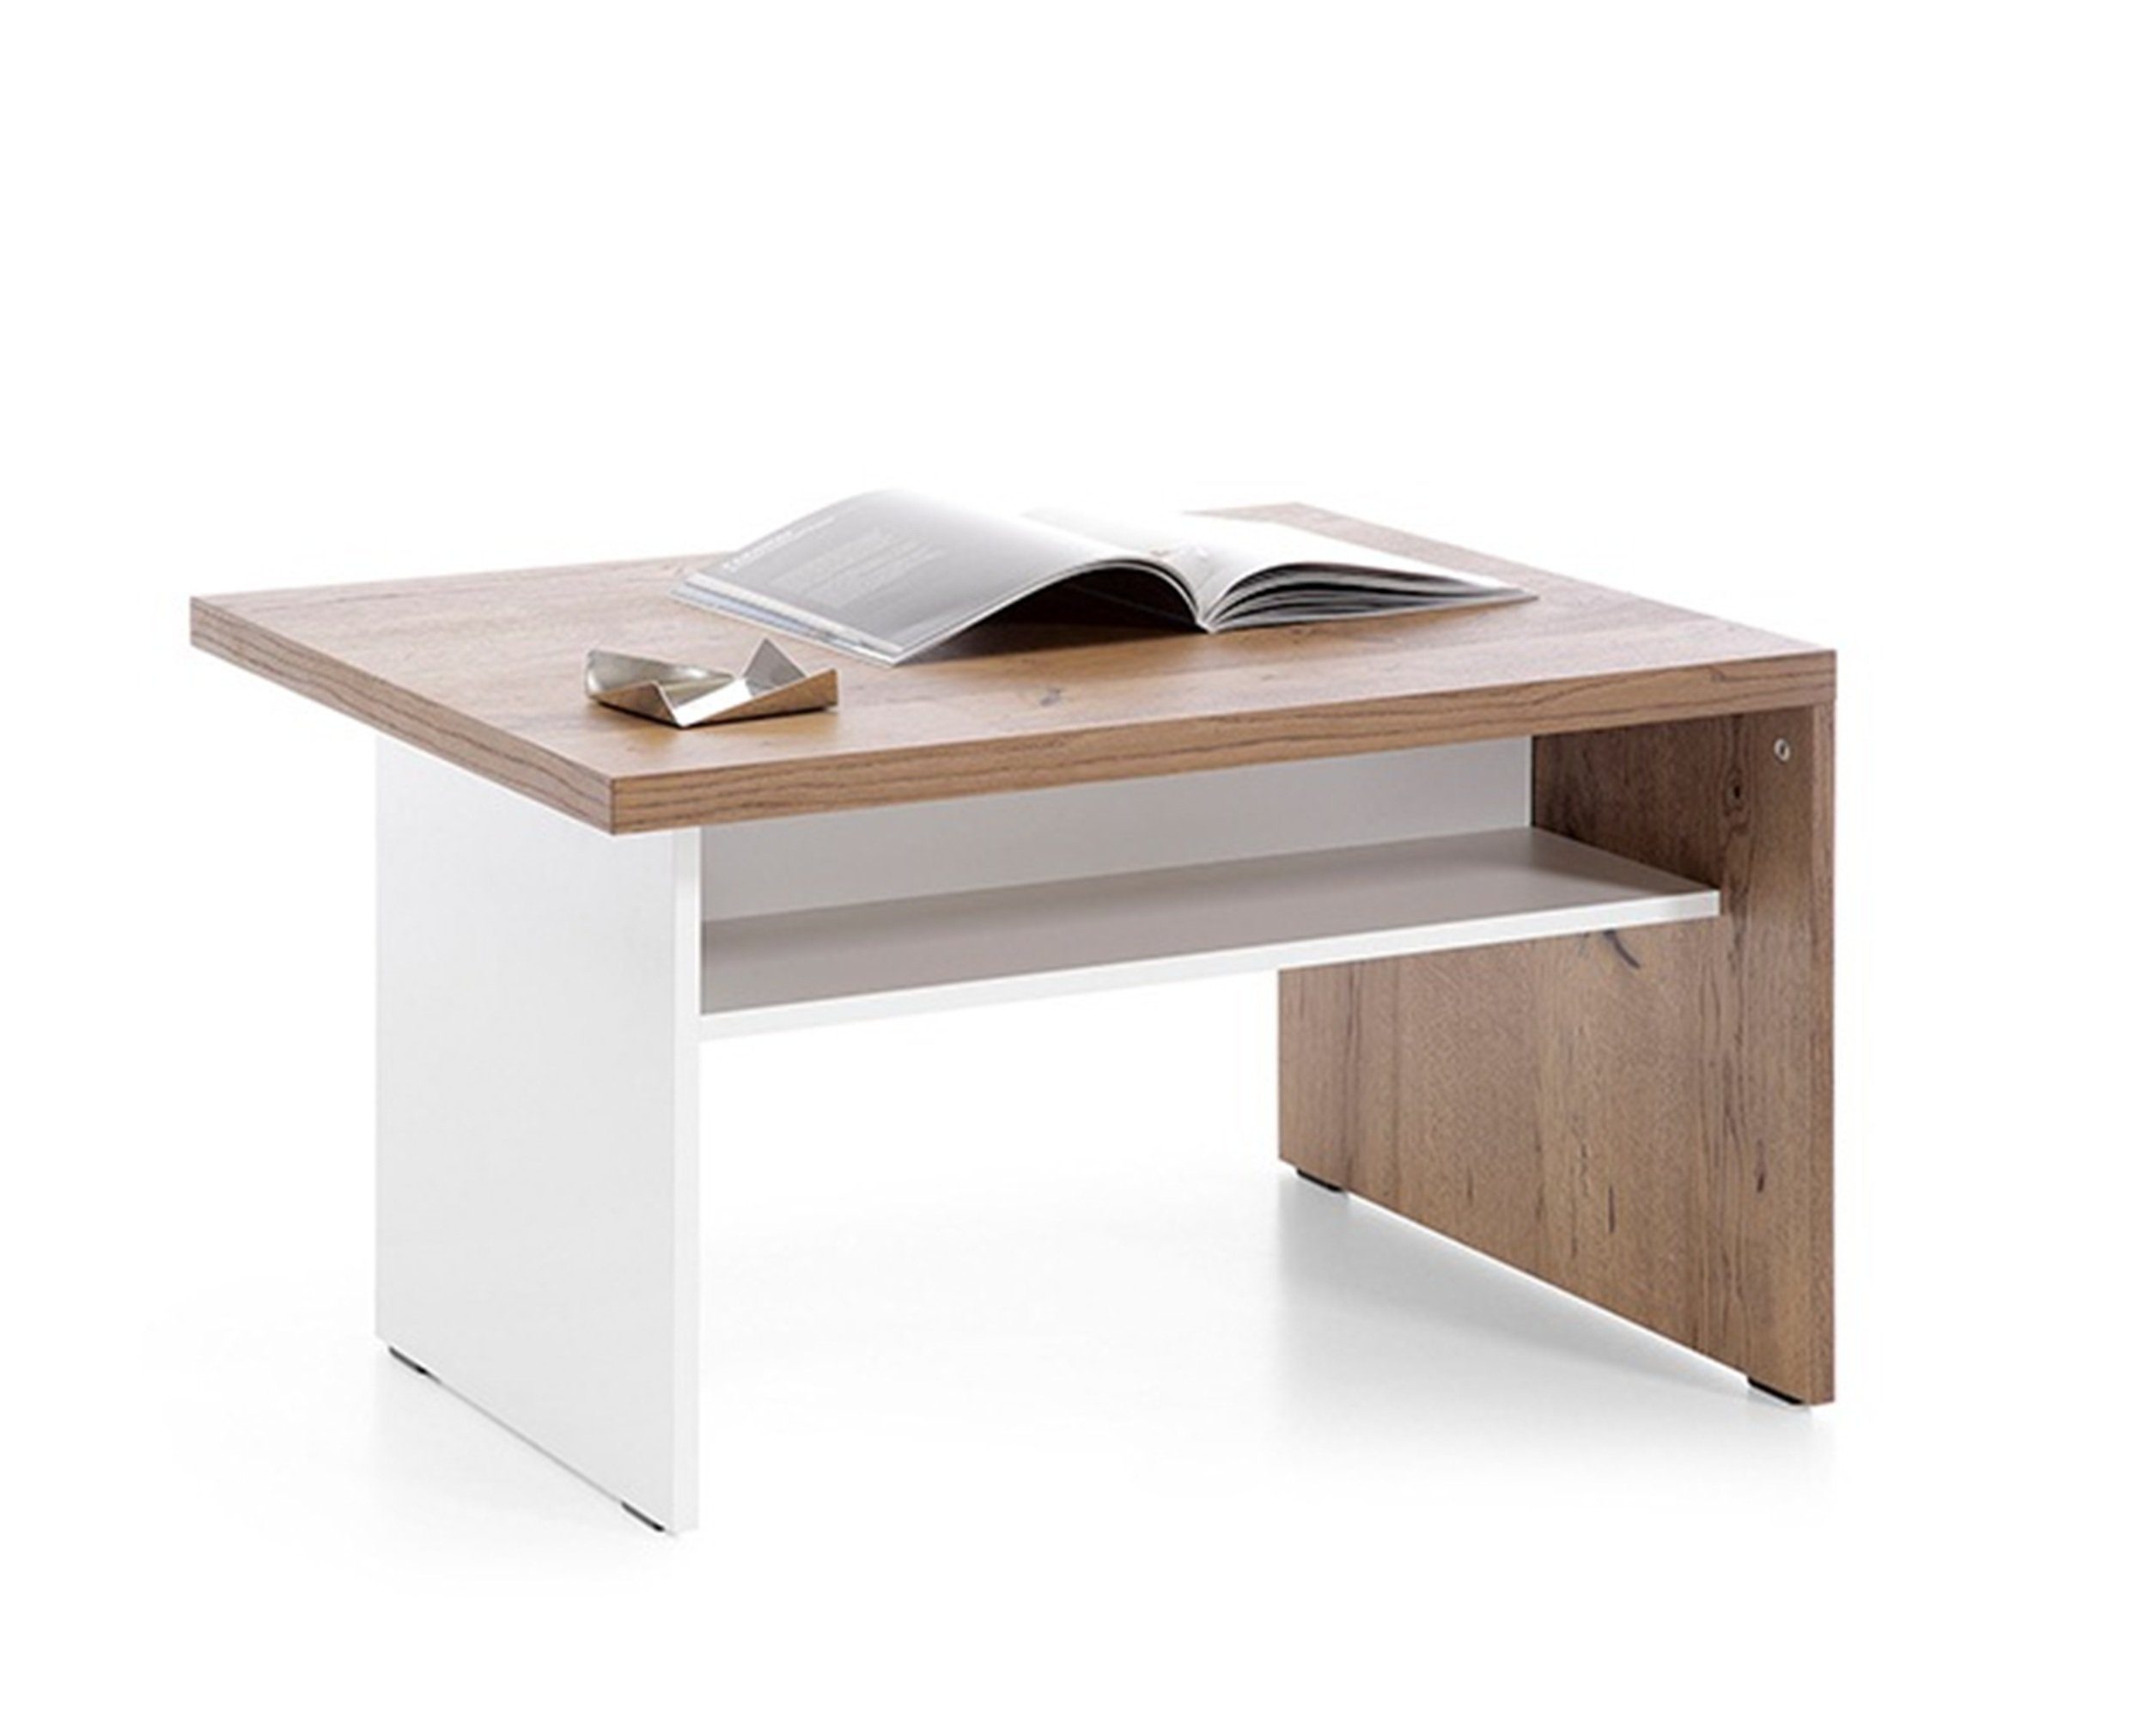 JVmoebel Couchtisch Klassischer Couchtisch Holztisch Beistelltisch Design Tische CM S3, Klassischer Couchtisch Holztisch Beistelltisch Design Tische CM S3